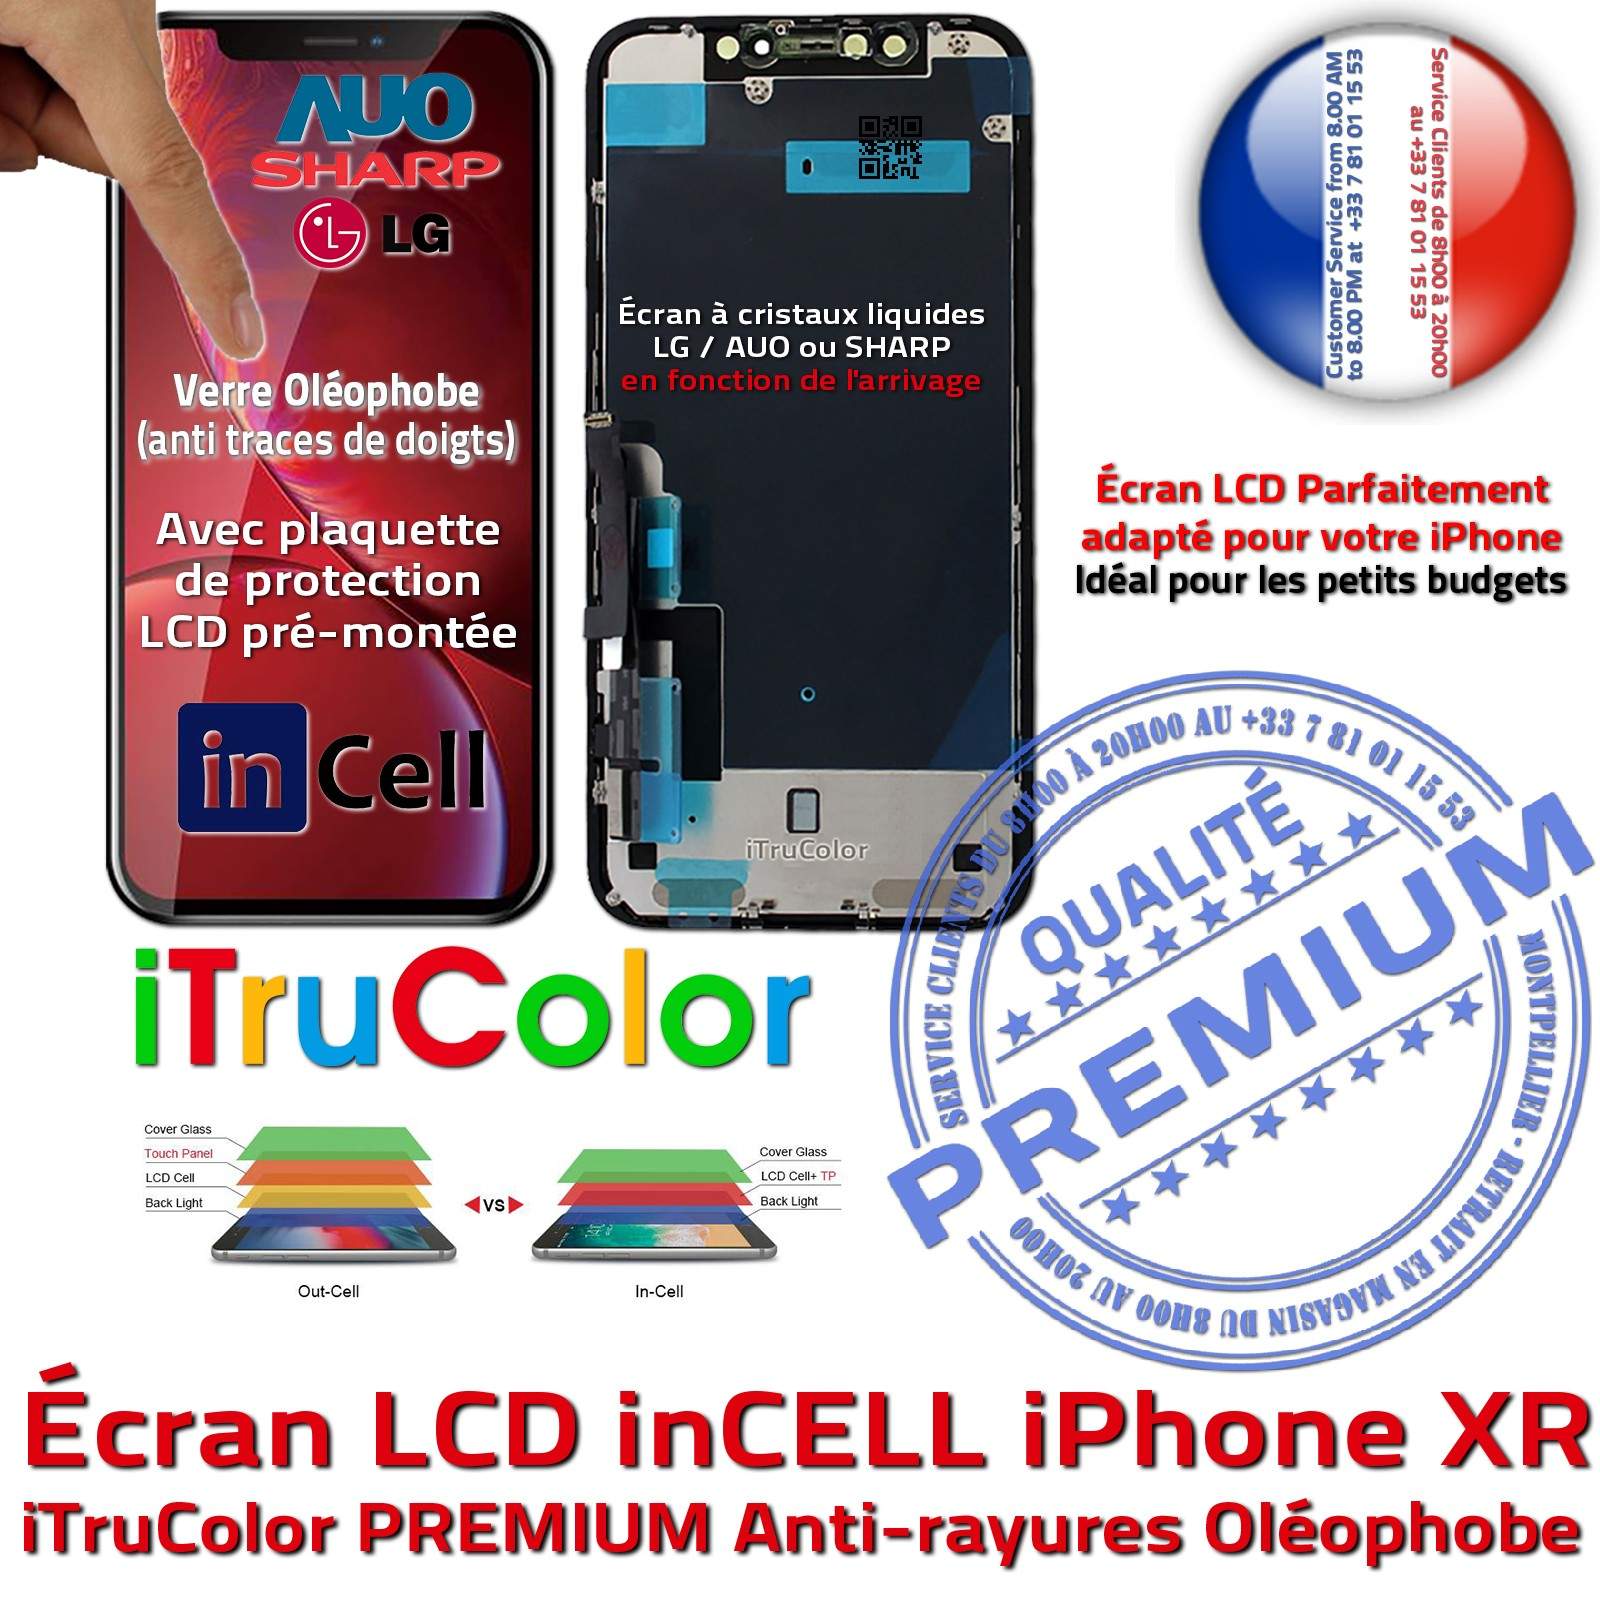 Verre Multi-Touch inCELL iPhone XR Apple Changer Écran LCD PREMIUM SmartPhone 3D Touch Remplacement Cristaux Liquides iTruColor